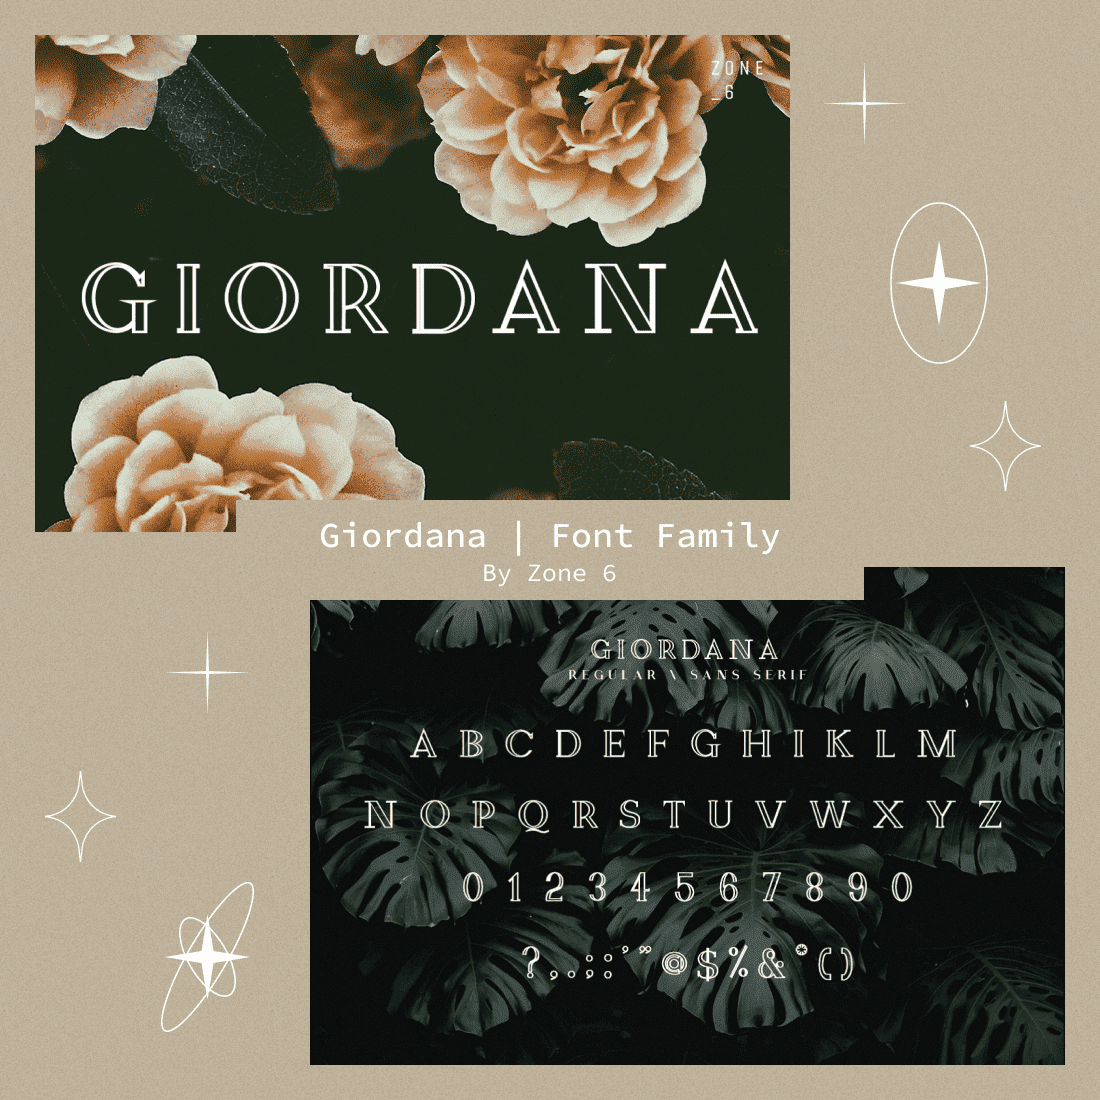 Giordana | Font Family.